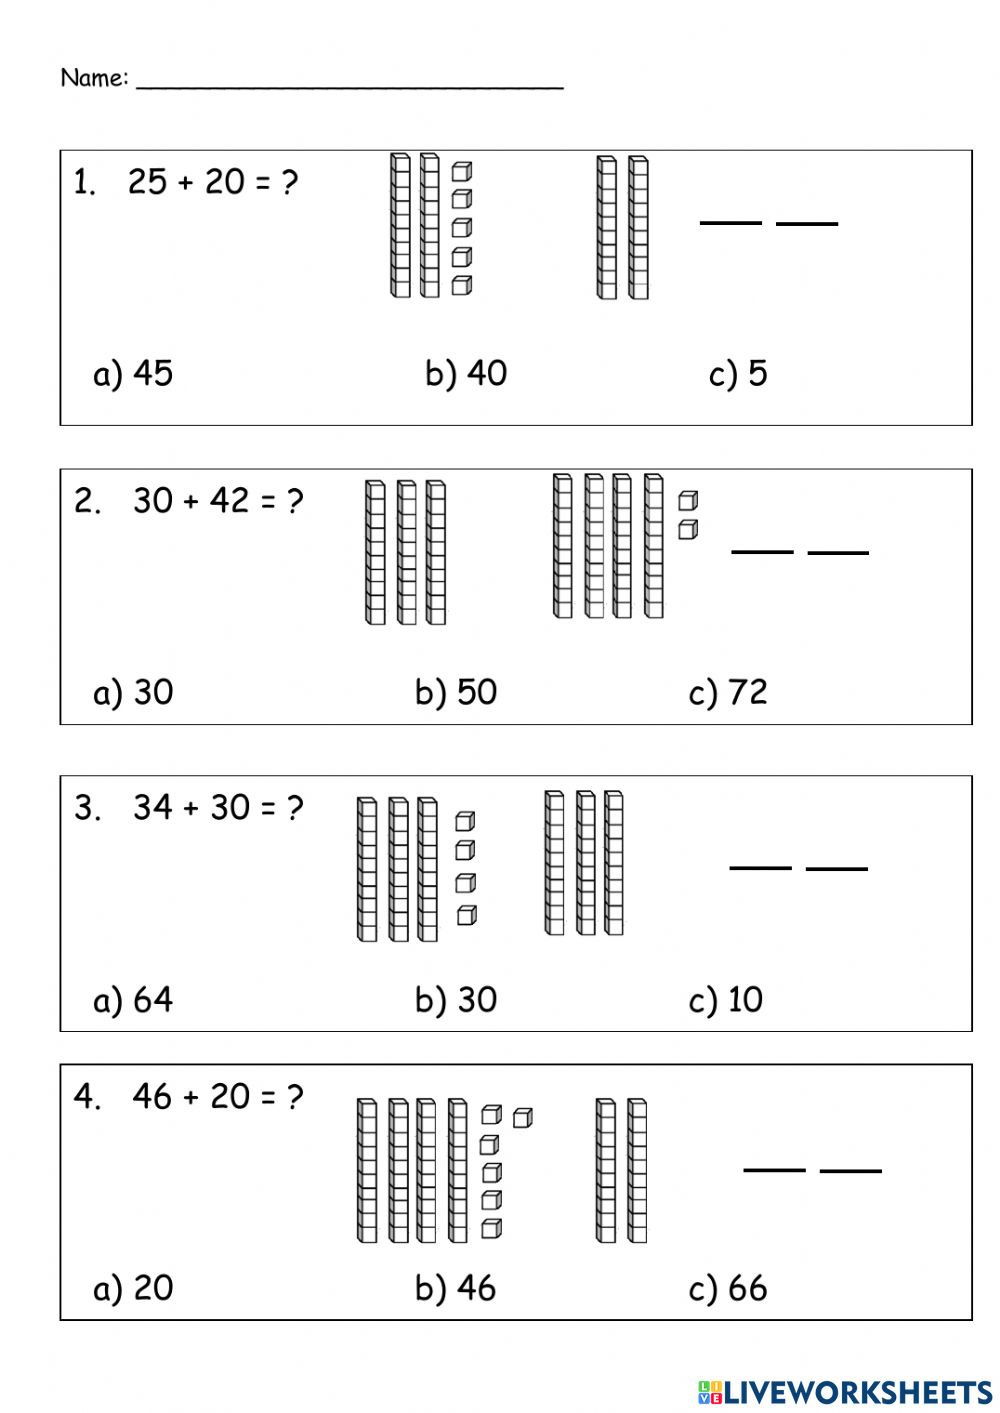 division-using-base-10-blocks-worksheets-divisonworksheets